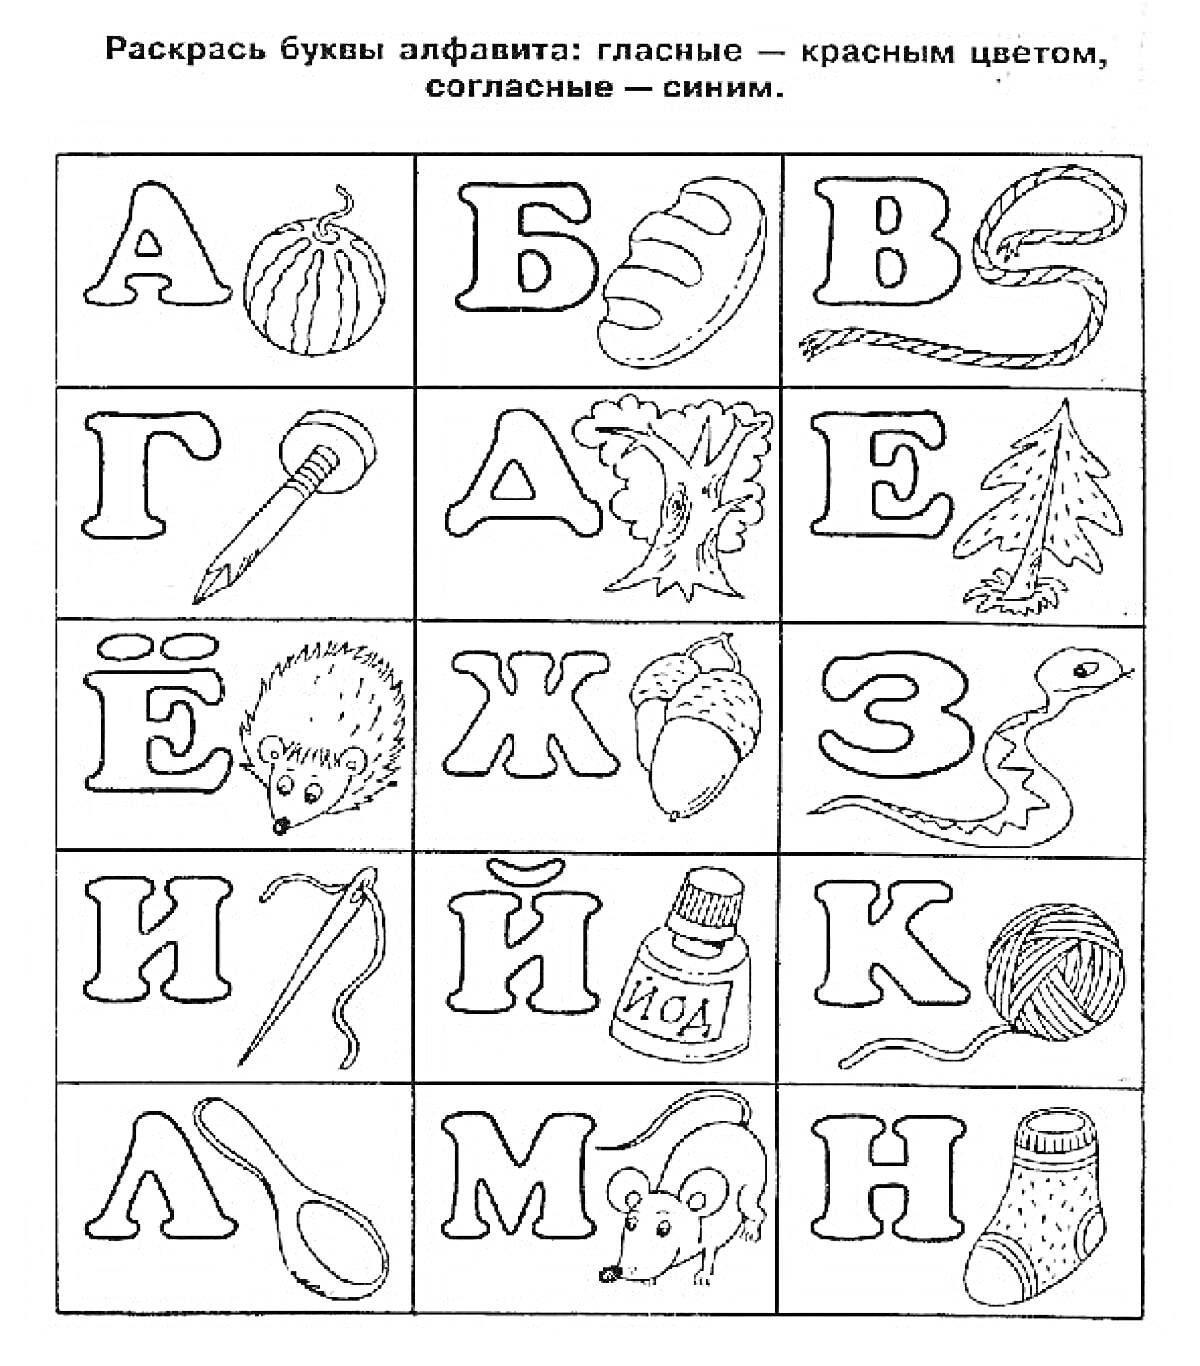 Алфавит с изображениями предметов на каждую букву